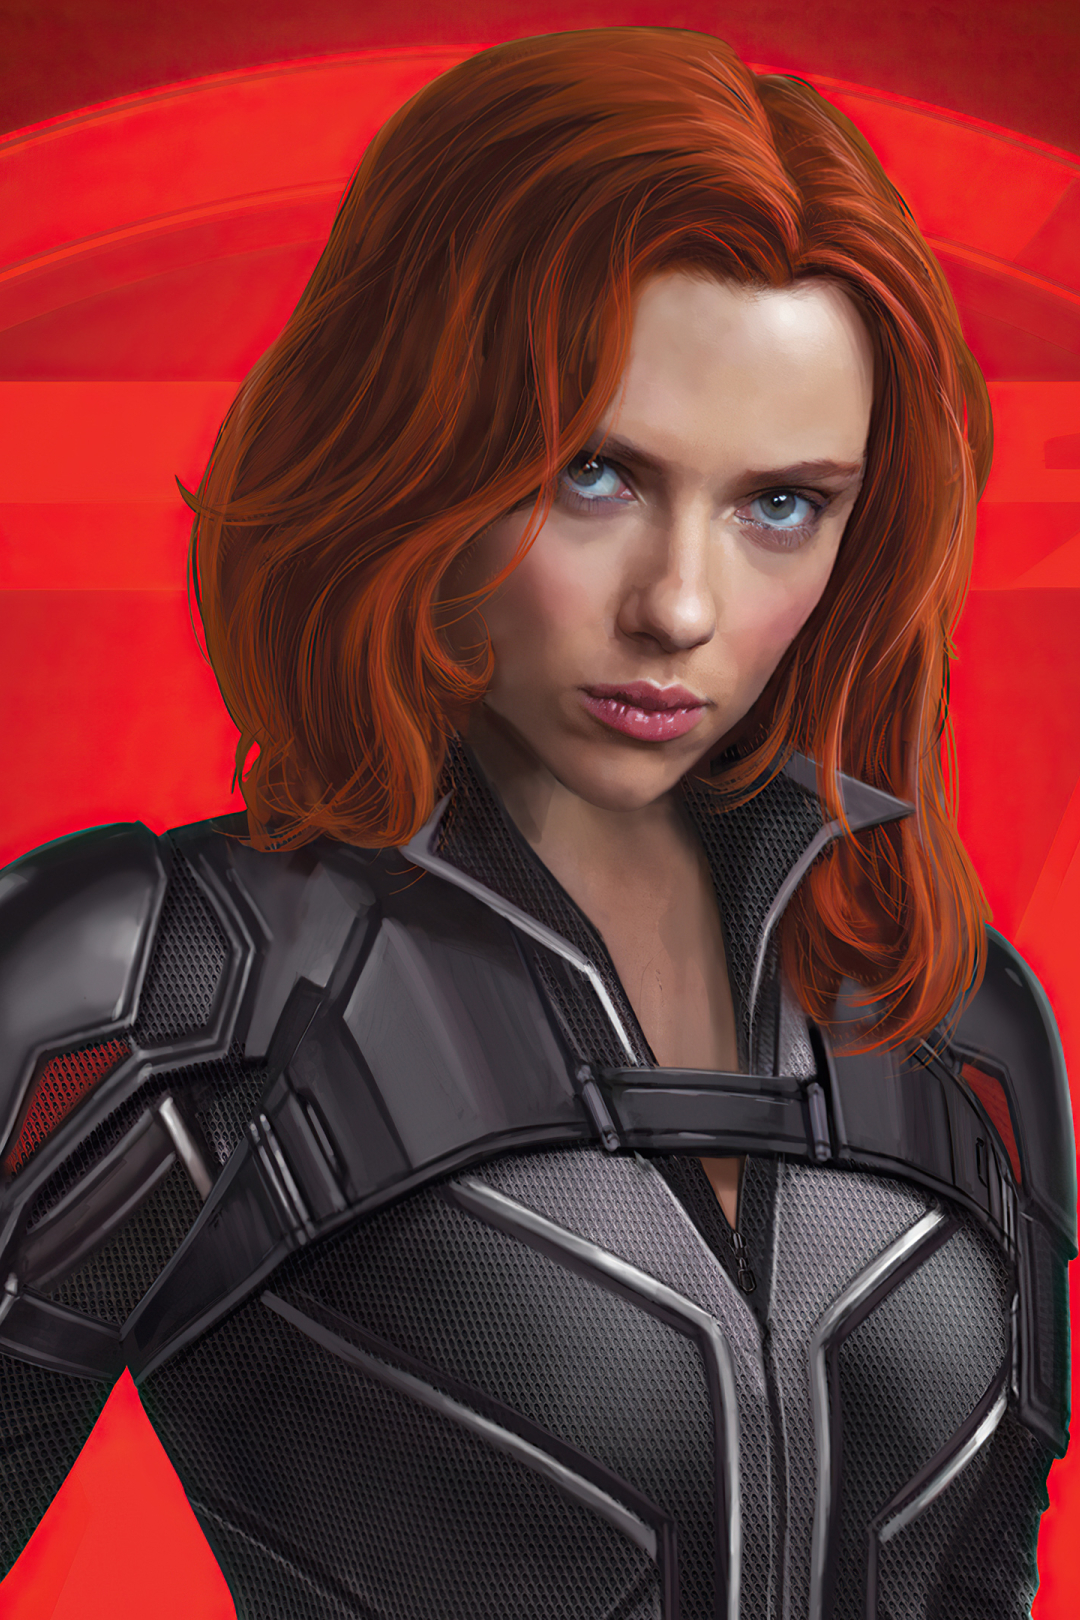 X Black Widow Marvel Scarlett Johansson X Resolution 24752 Hot Sex Picture 